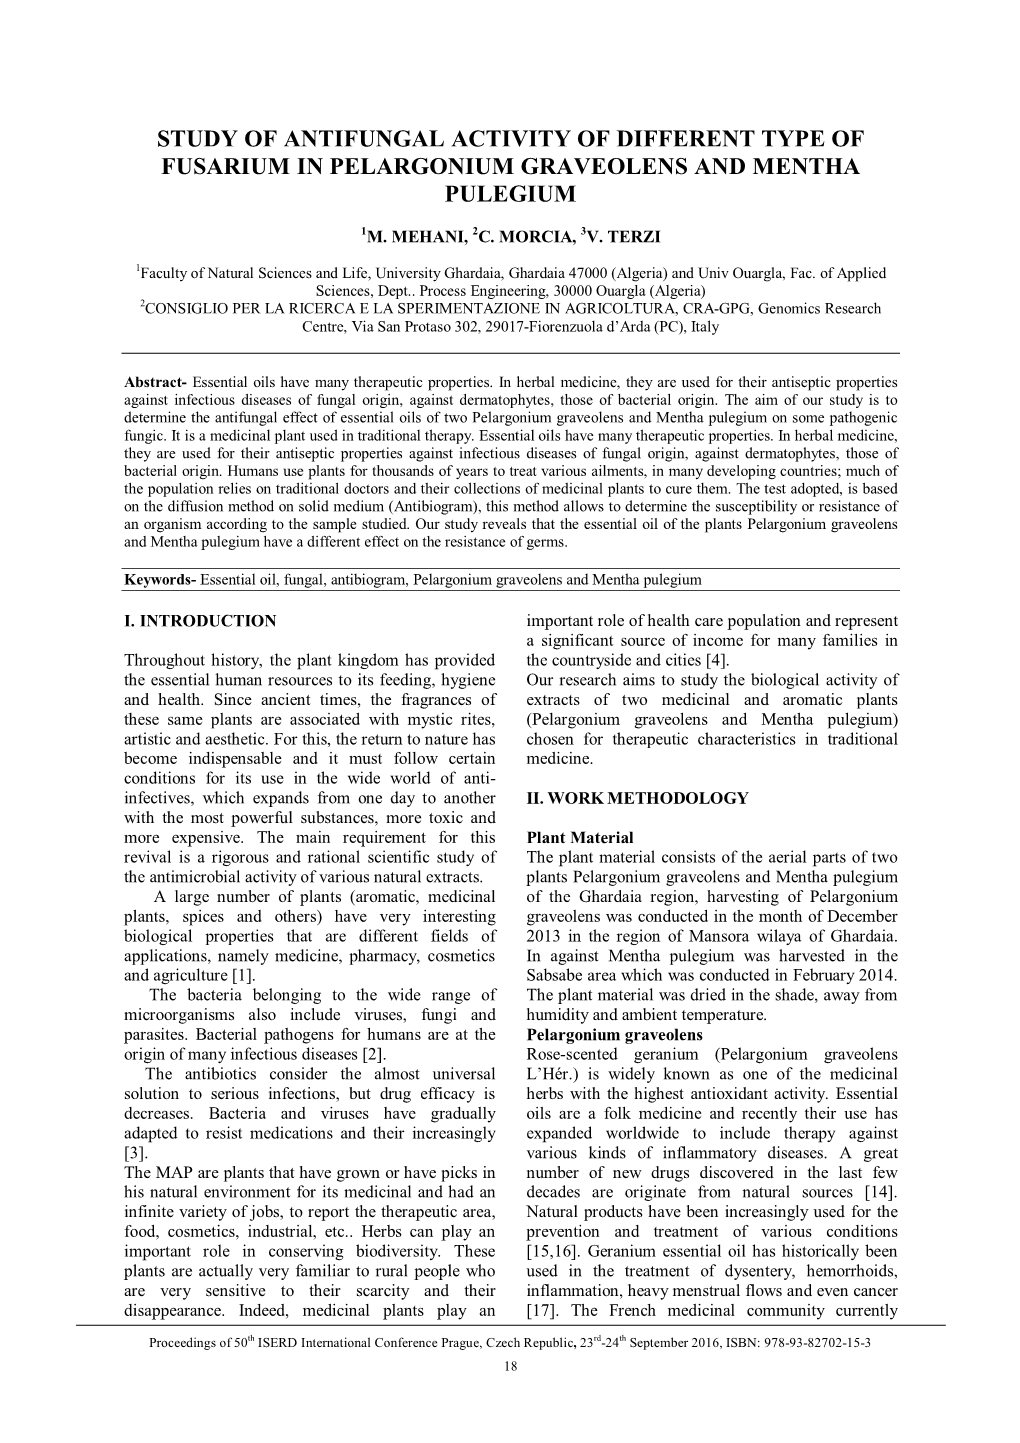 Study of Antifungal Activity of Different Type of Fusarium in Pelargonium Graveolens and Mentha Pulegium